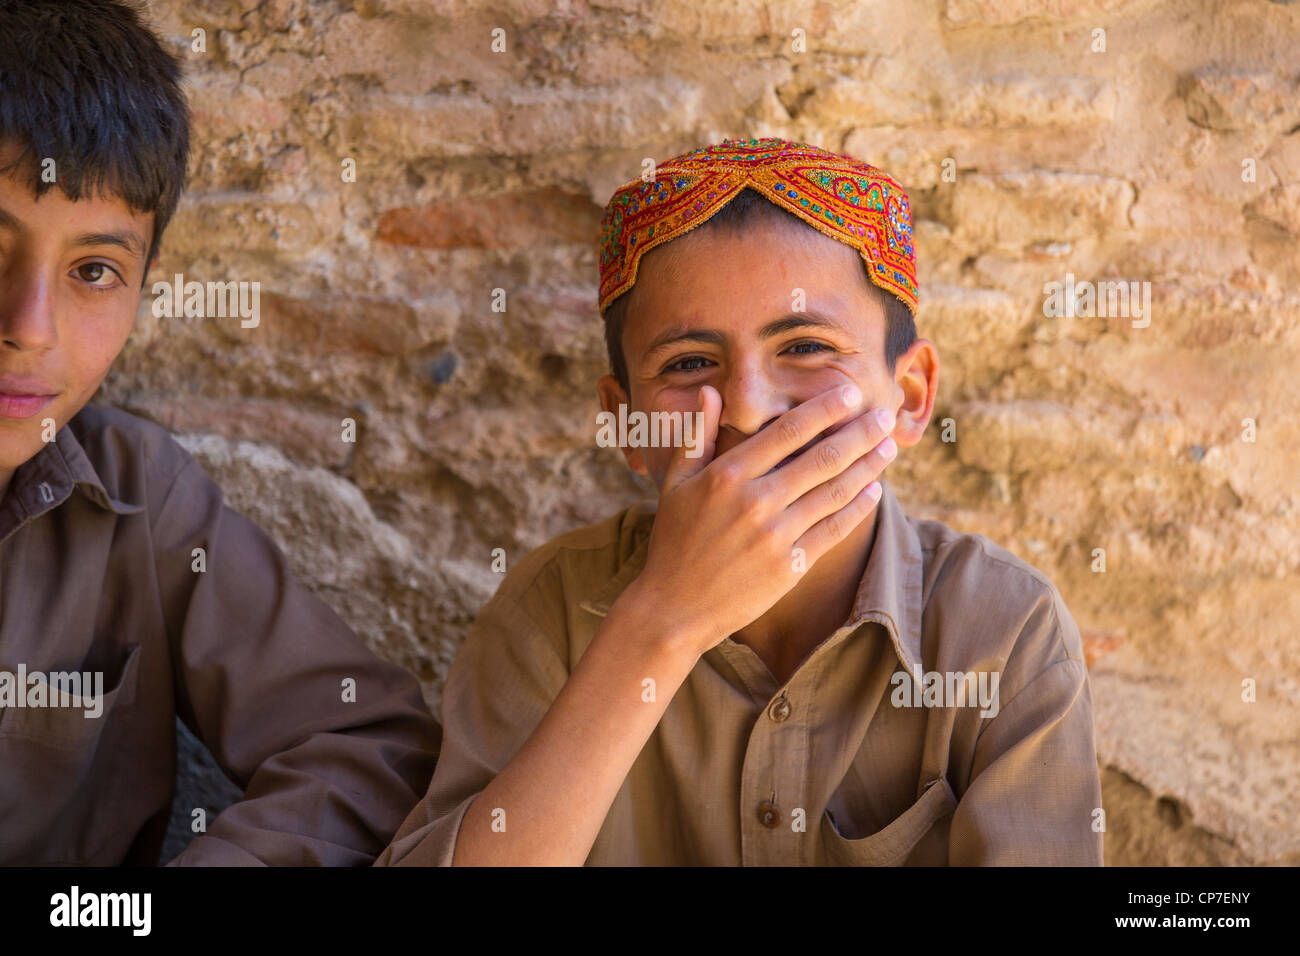 Jeune garçon musulman dans la province du Pendjab, au Pakistan Banque D'Images